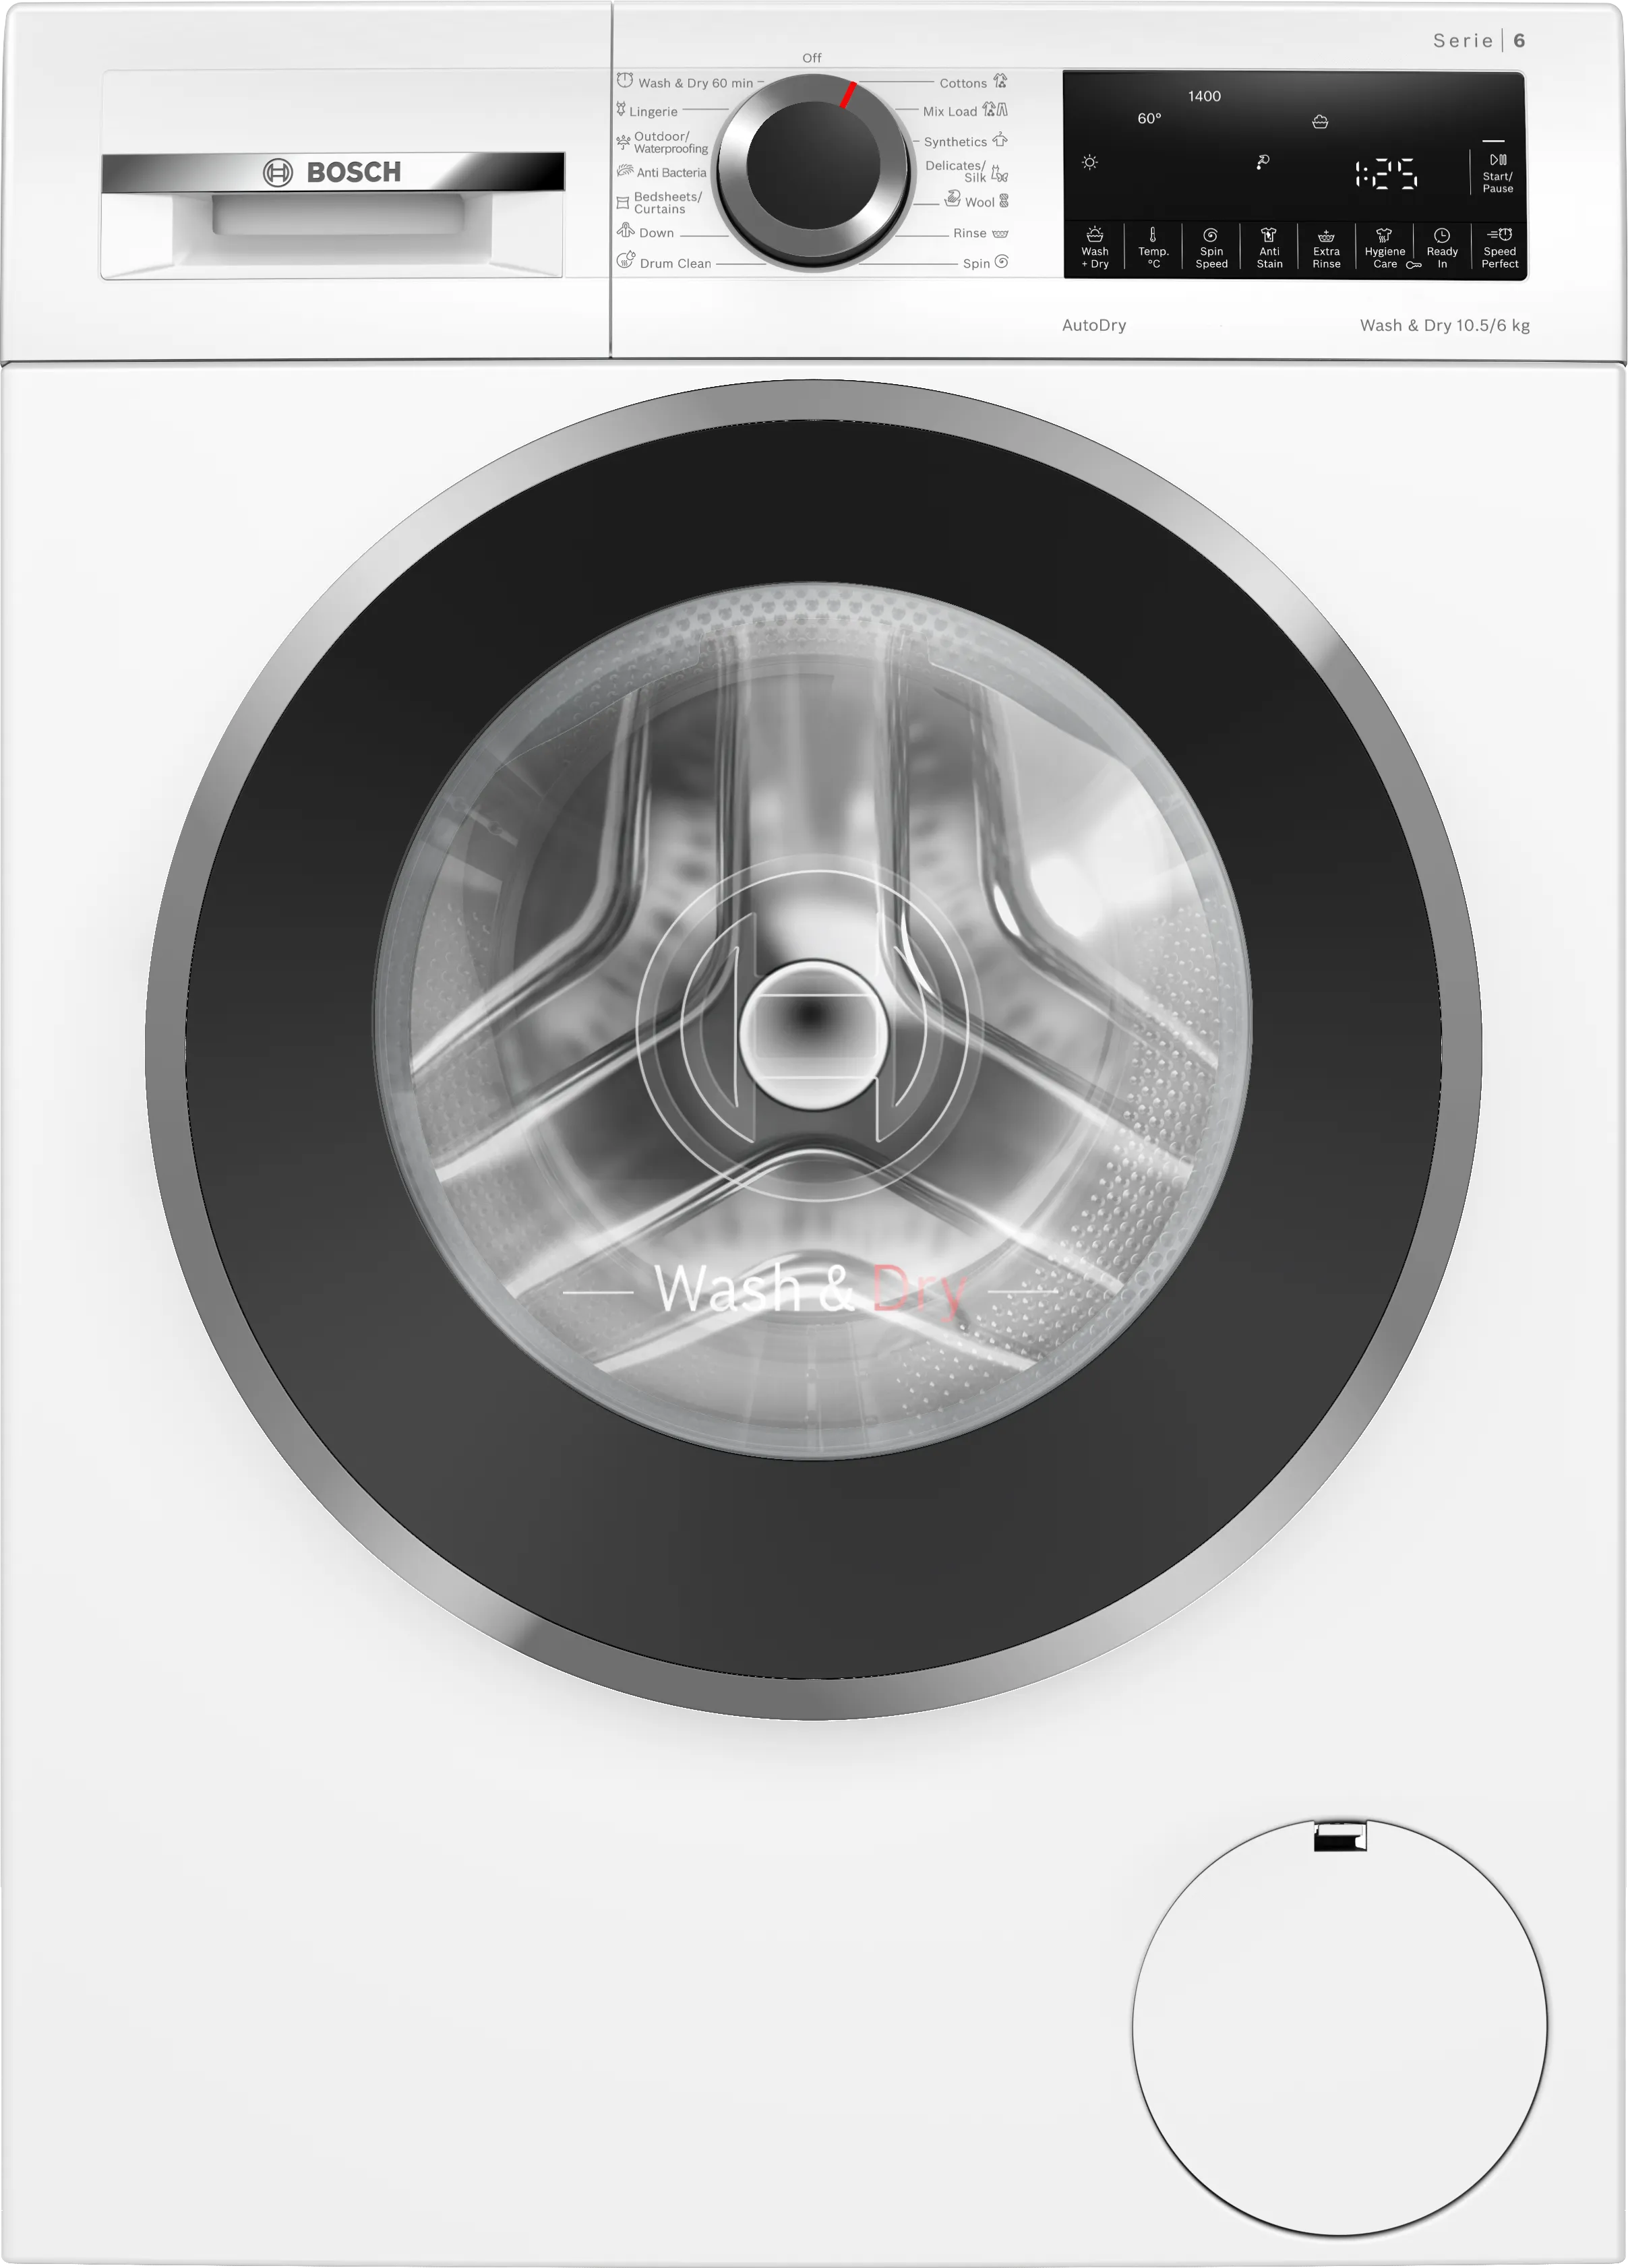 Series 6 Washer dryer 10.5/6 kg 1400 rpm 